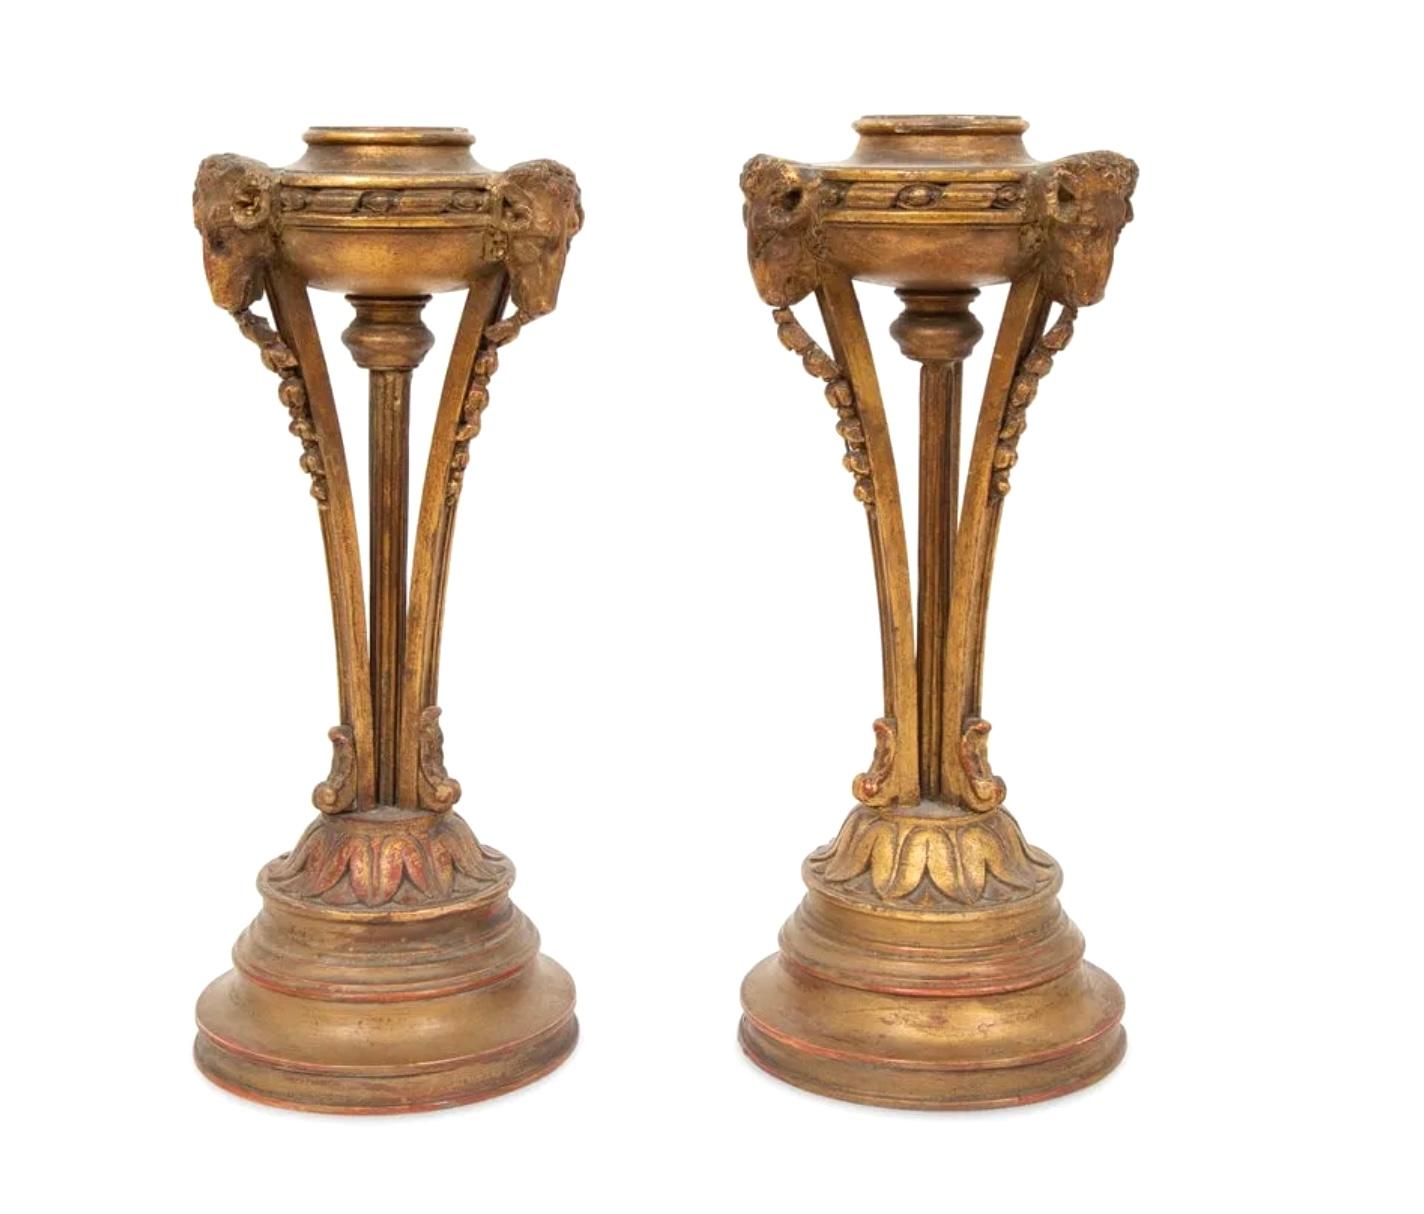 Paire de torchères en bois doré sculpté de la fin du 19e siècle/début du 20e siècle. Chacune avec des supports en forme de tête de bélier, fabriquée comme une lampe mais sans accessoires (bases seulement). Peut être utilisé avec des bougies ou